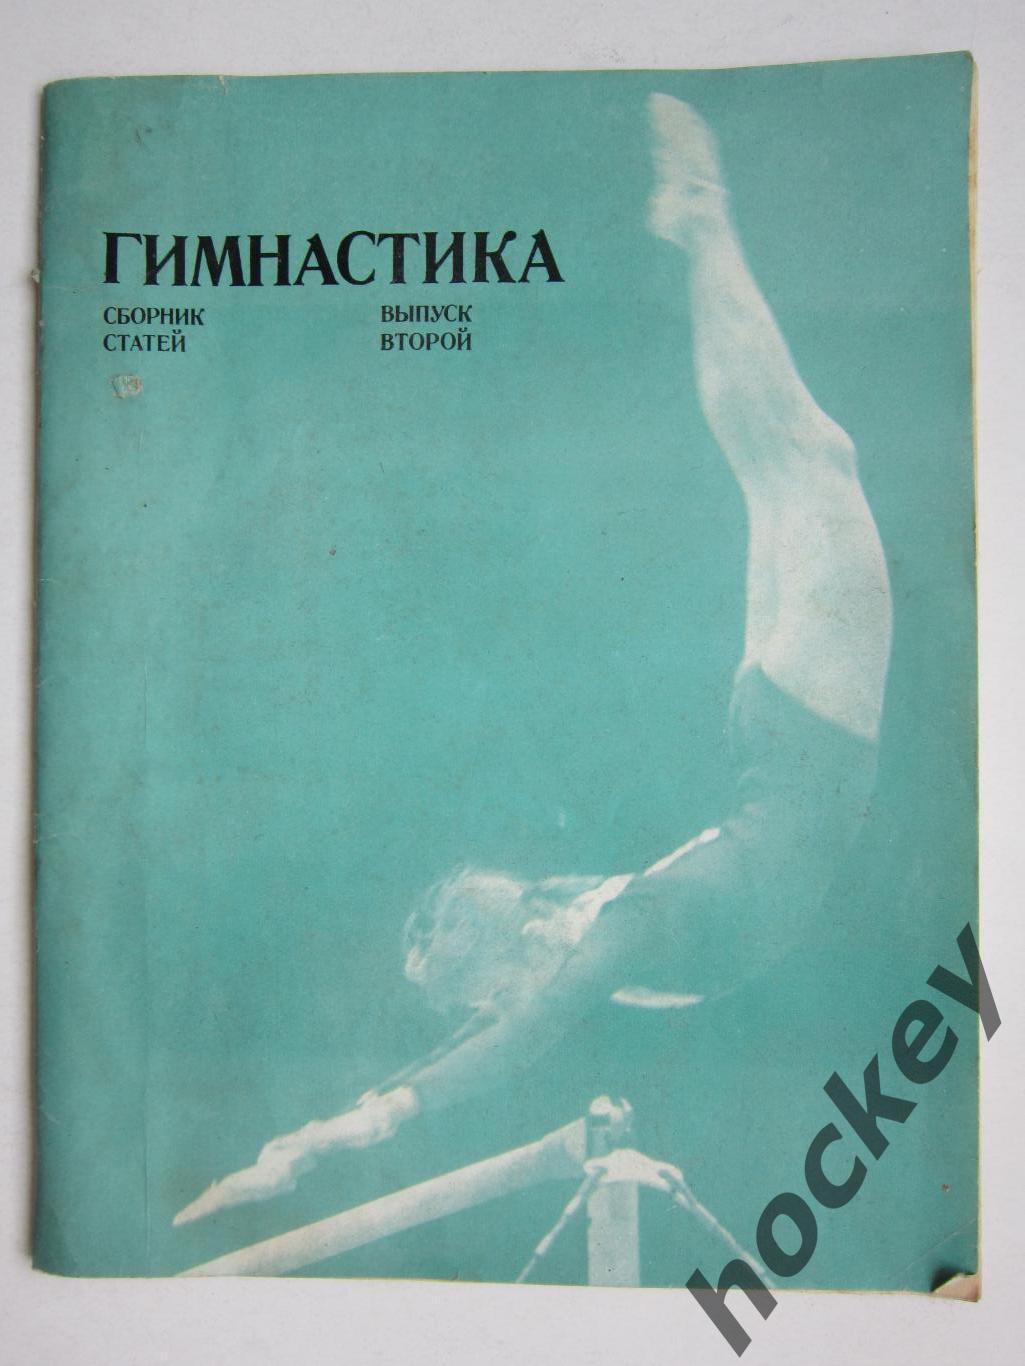 Журнал Гимнастика. Выпуск 2. Сборник статей (1973 год)